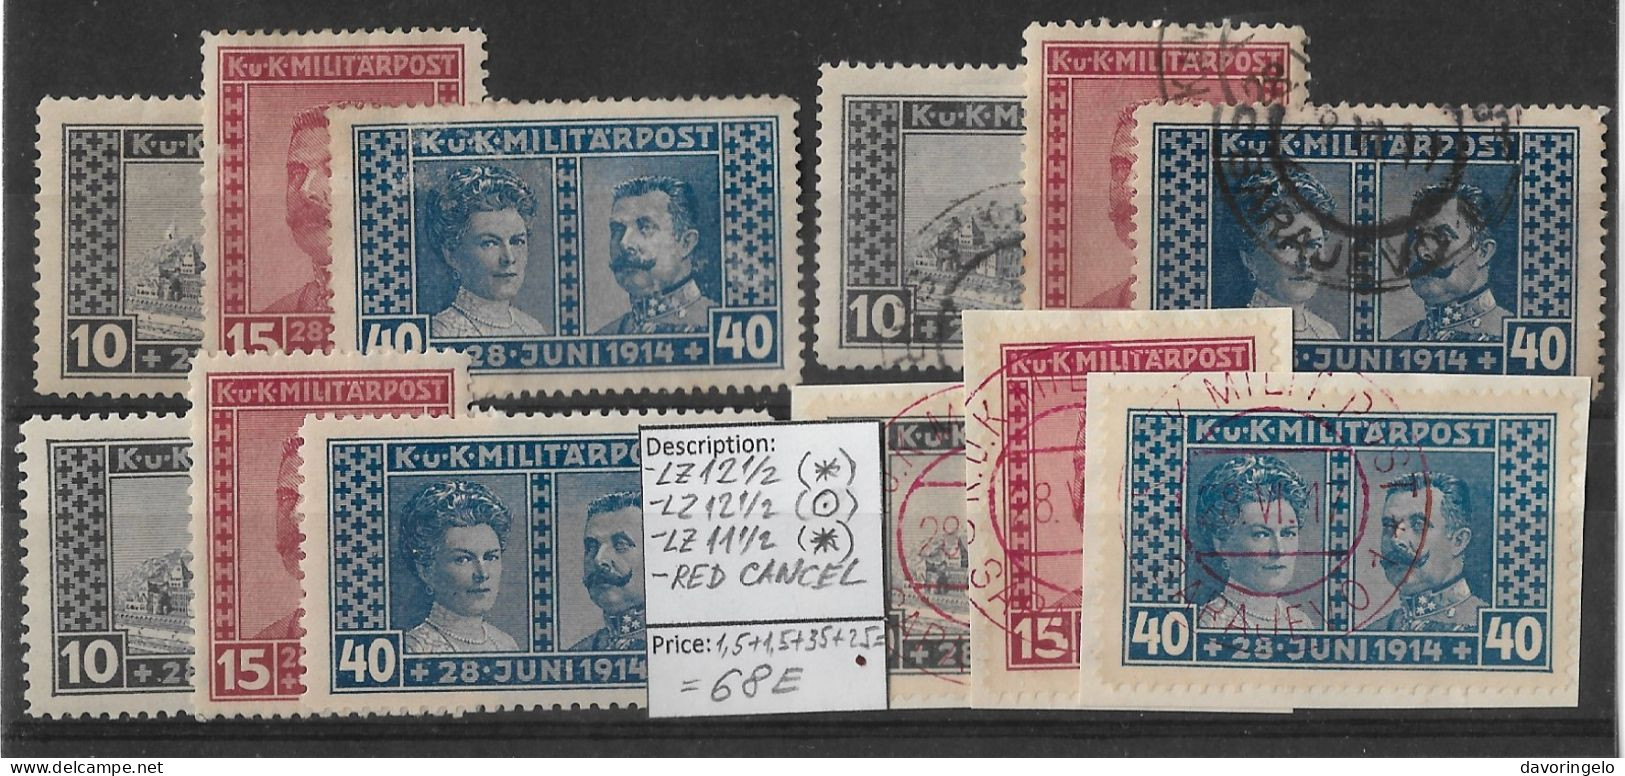 Bosnia-Herzegovina/Austria-Hungary, 1917, 4 SETS No 121-123: Perf. 12 1/2(*), 12 1/2(canc.), 11 1/2(*), SET RED CANC. - Bosnia Erzegovina